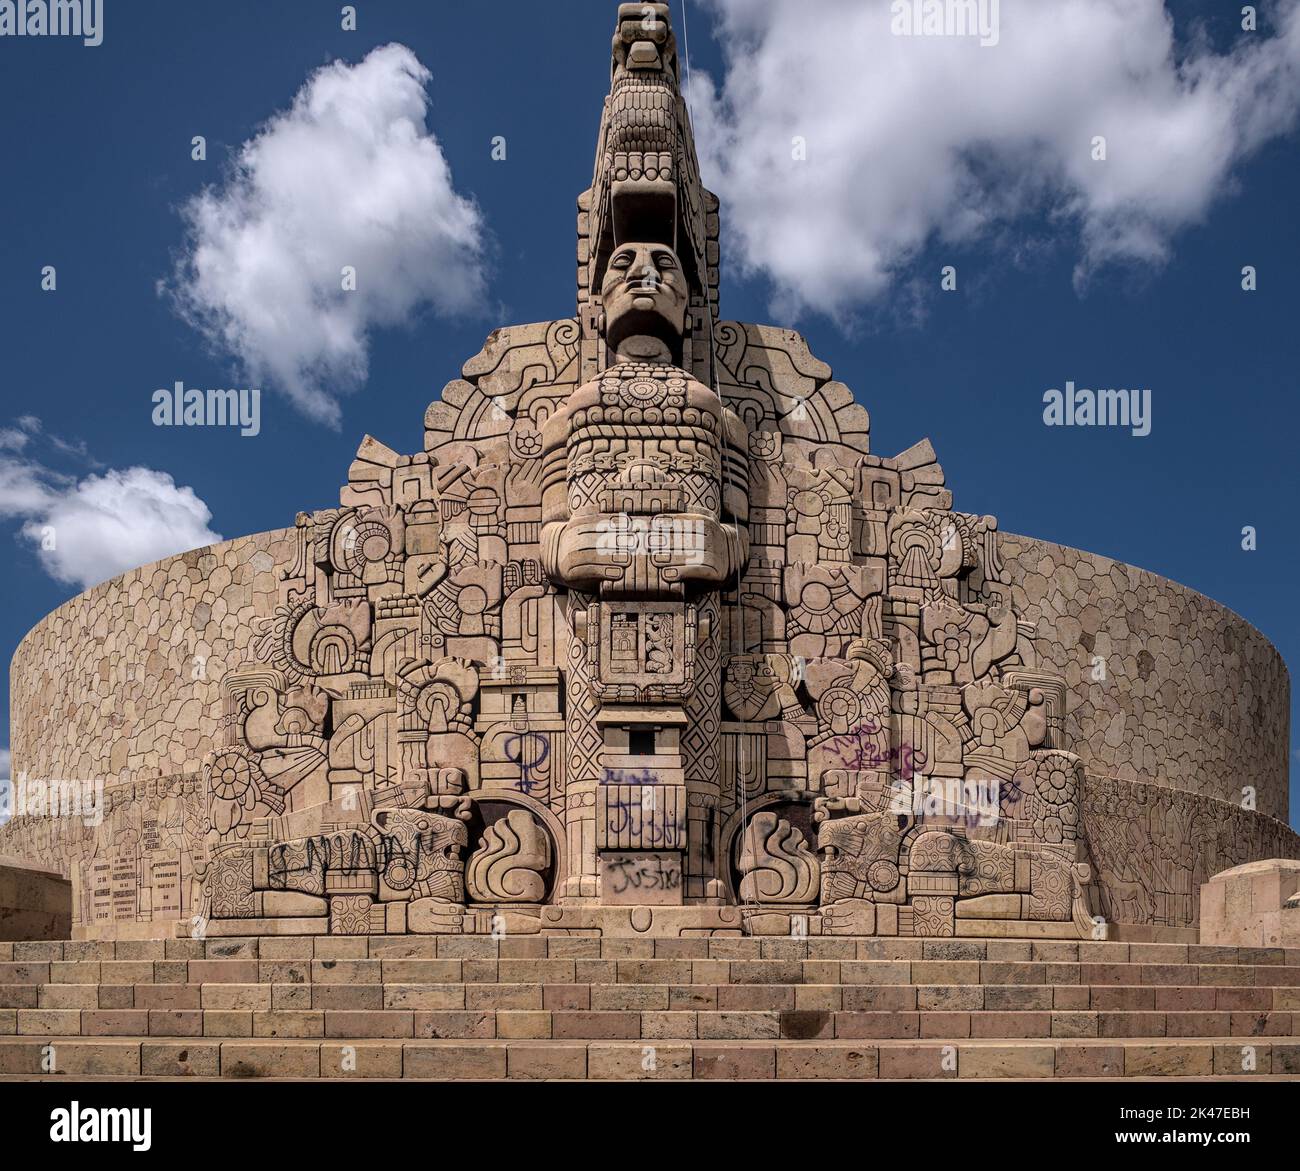 Verkehrskreis Skulptur monumento a la patria in Merida Stadt Mexiko. Handgeschnitzt, um das maya-Erbe der mexikanischen Ureinwohner zu ehren. Stockfoto